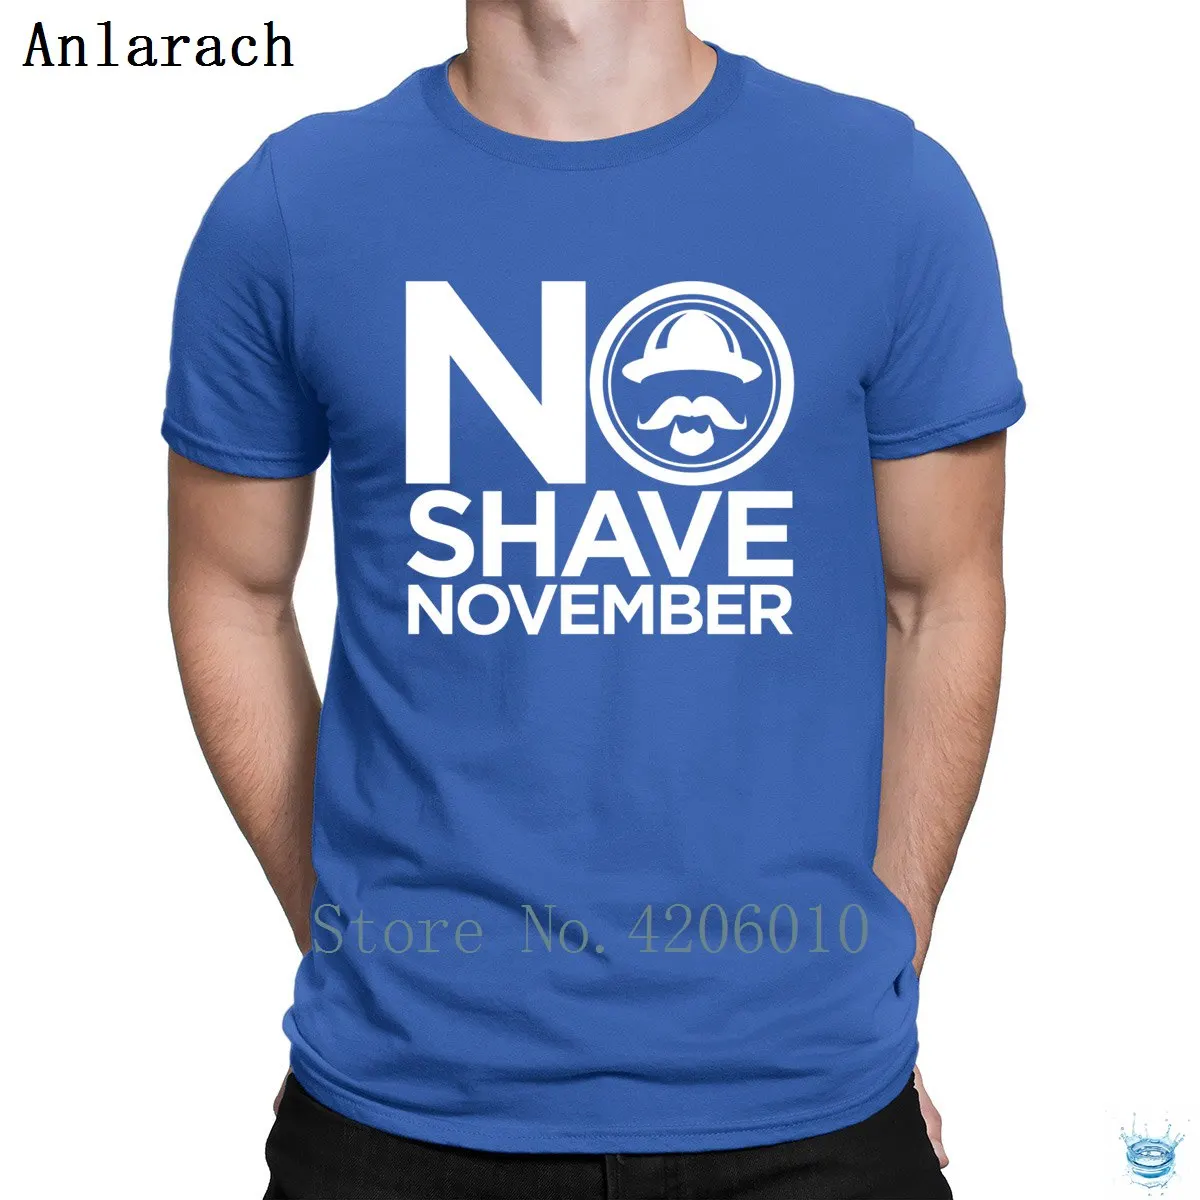 Традиционная футболка с надписью «No Shave November», фирменная графическая летняя стильная футболка для мужчин в стиле хип-хоп, хлопок, стильный дизайн